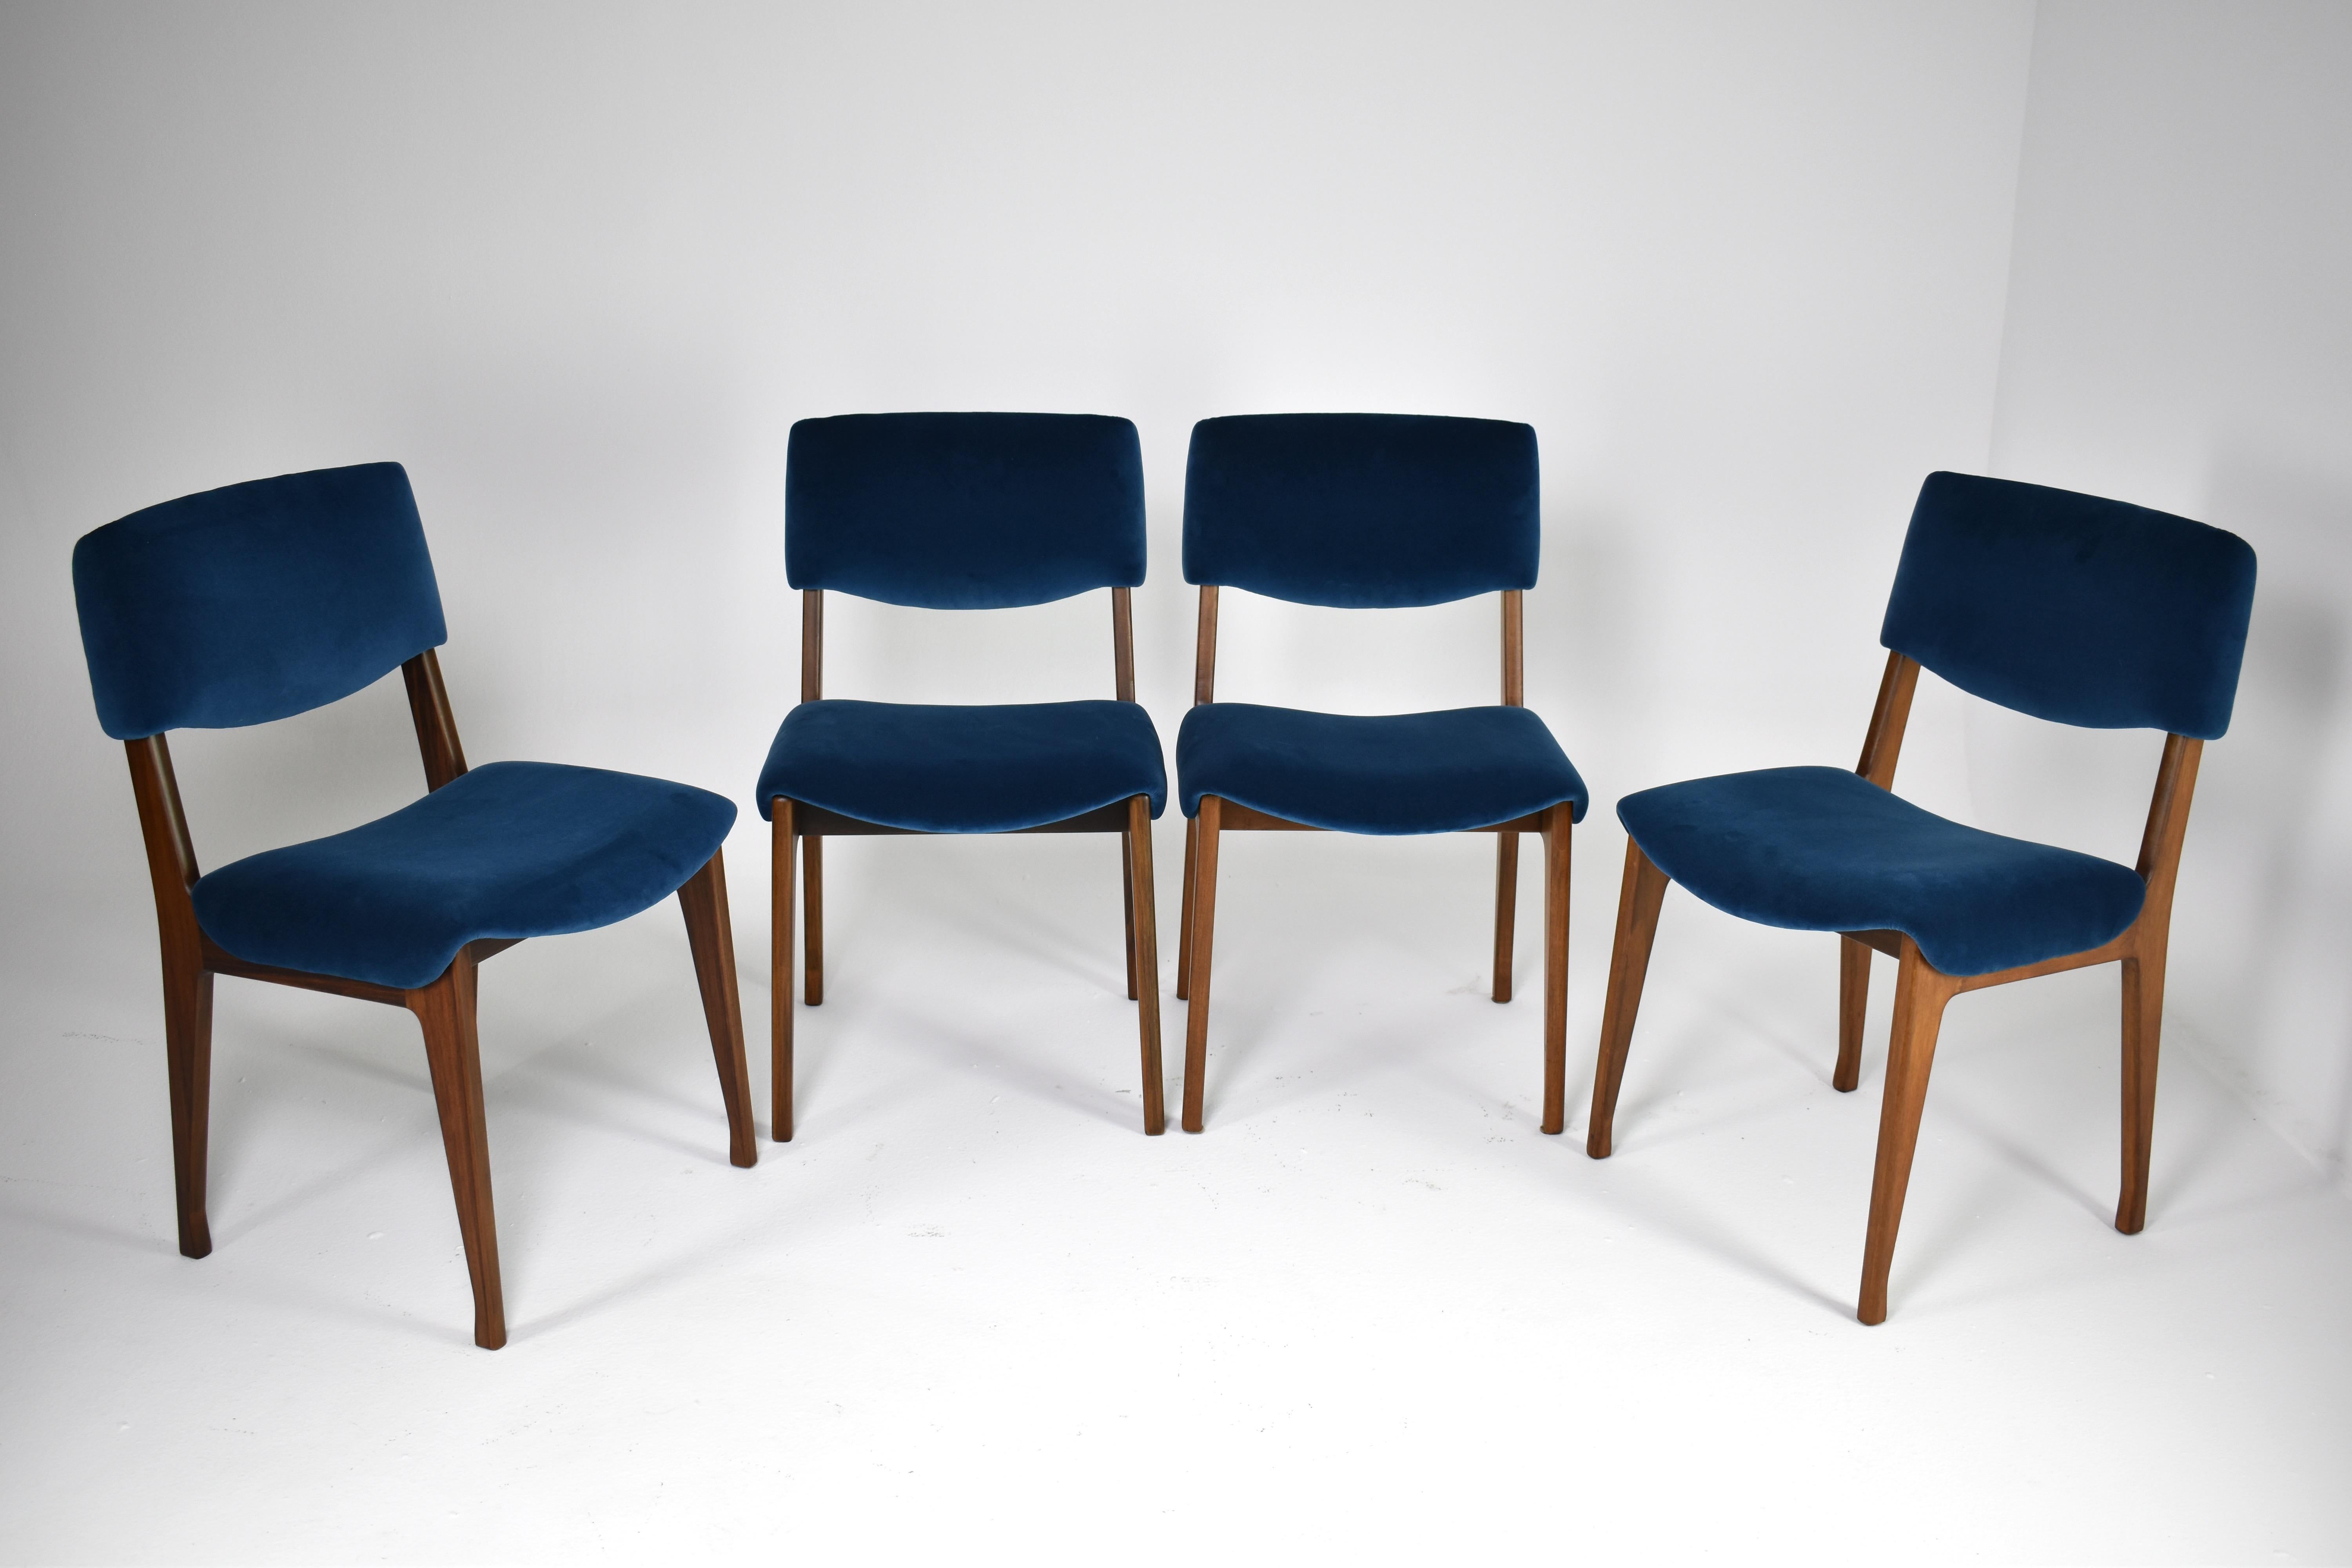 Satz von vier restaurierten italienischen Esszimmerstühlen von Ico Parisi für MIM aus den 1950er- und 1960er-Jahren. Aus Holz gefertigt und mit dunkelblauem Samt gepolstert. Diese schönen Collectional-Stücke zeichnen sich durch ihre geschwungene